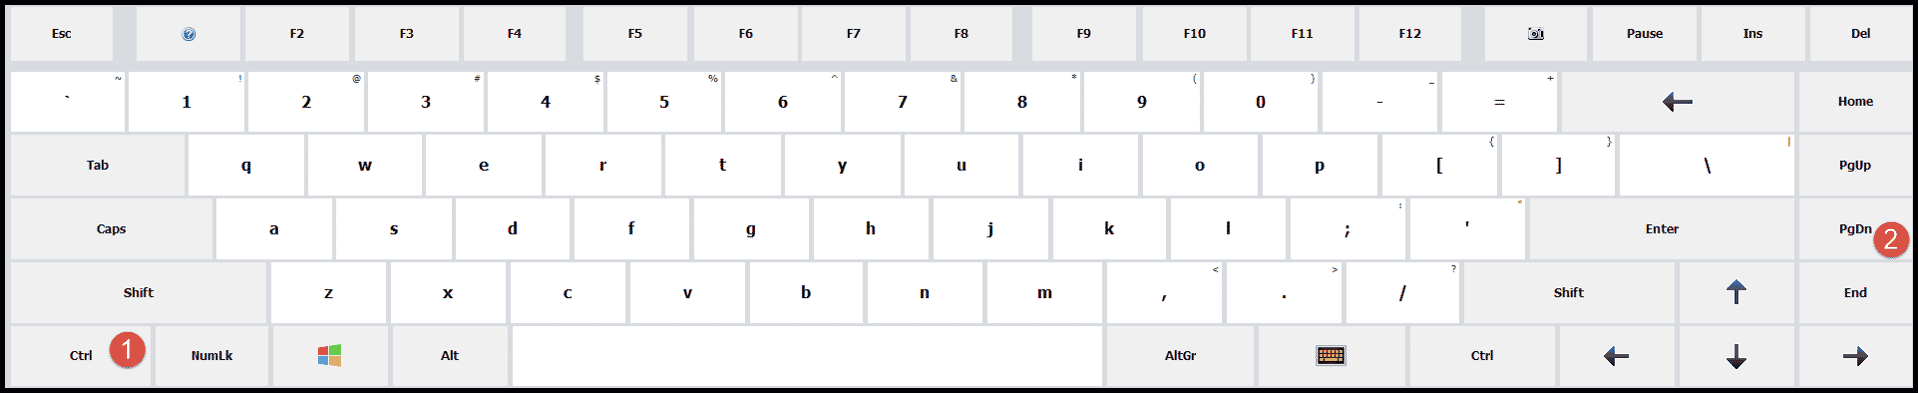 método abreviado de teclado para cambiar de pestaña a la derecha